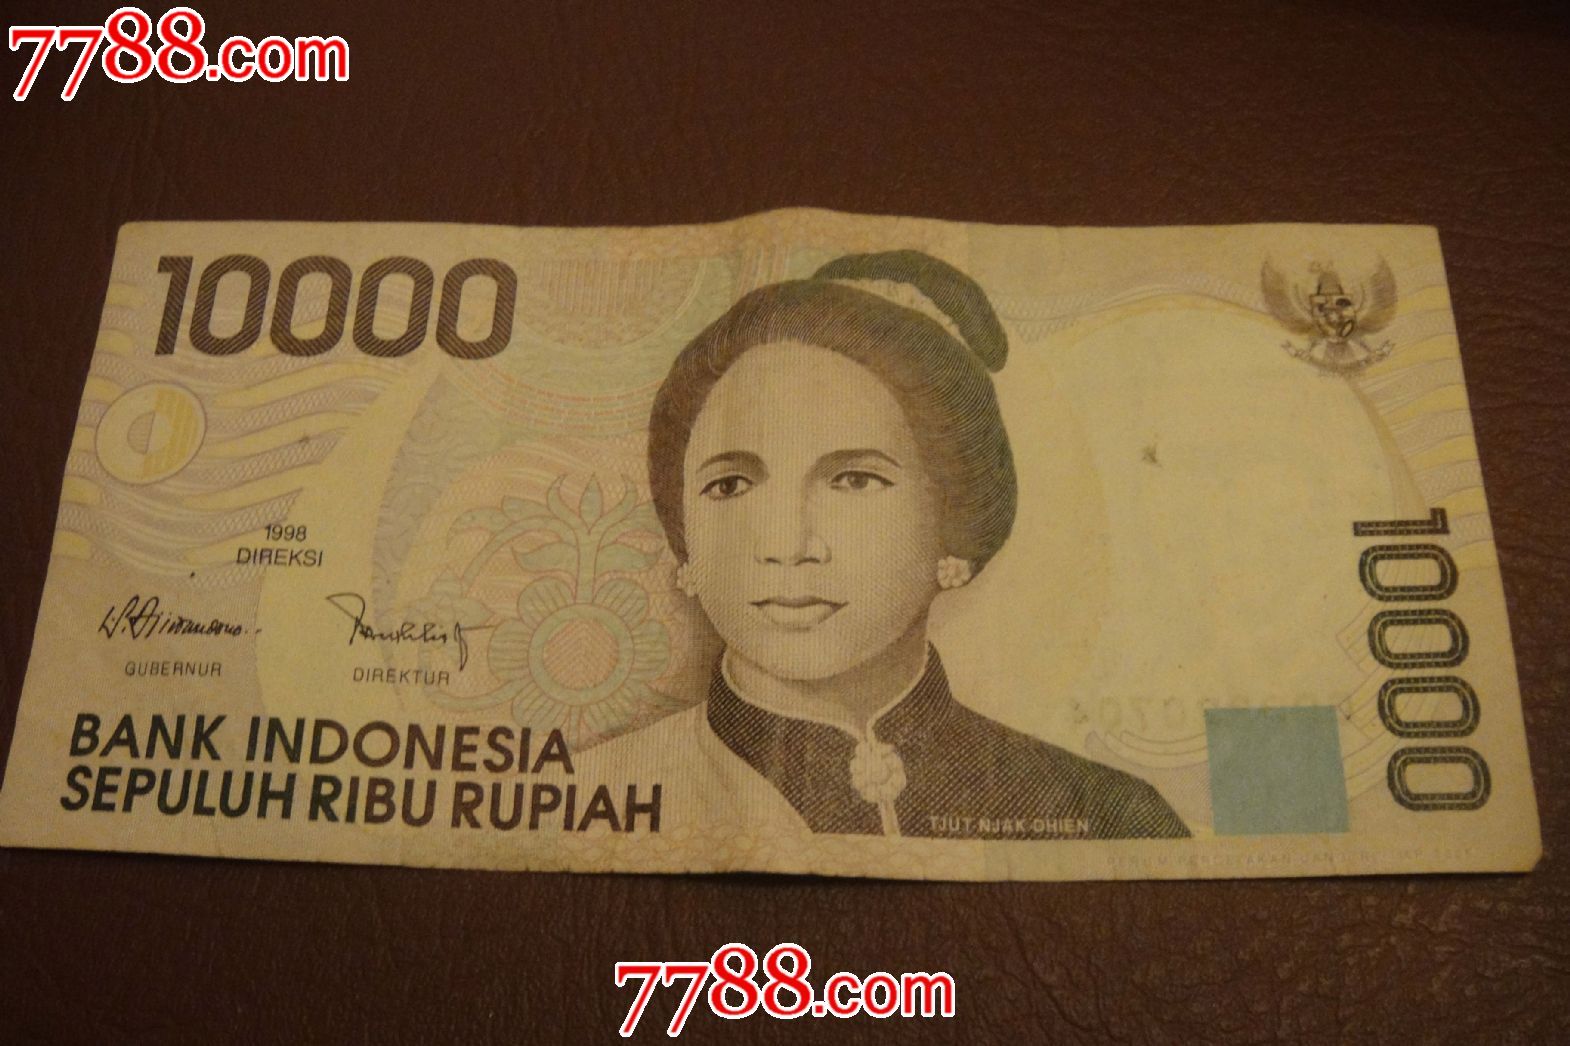 印度尼西亚10000卢比-se21554342-外国钱币-零售-7788